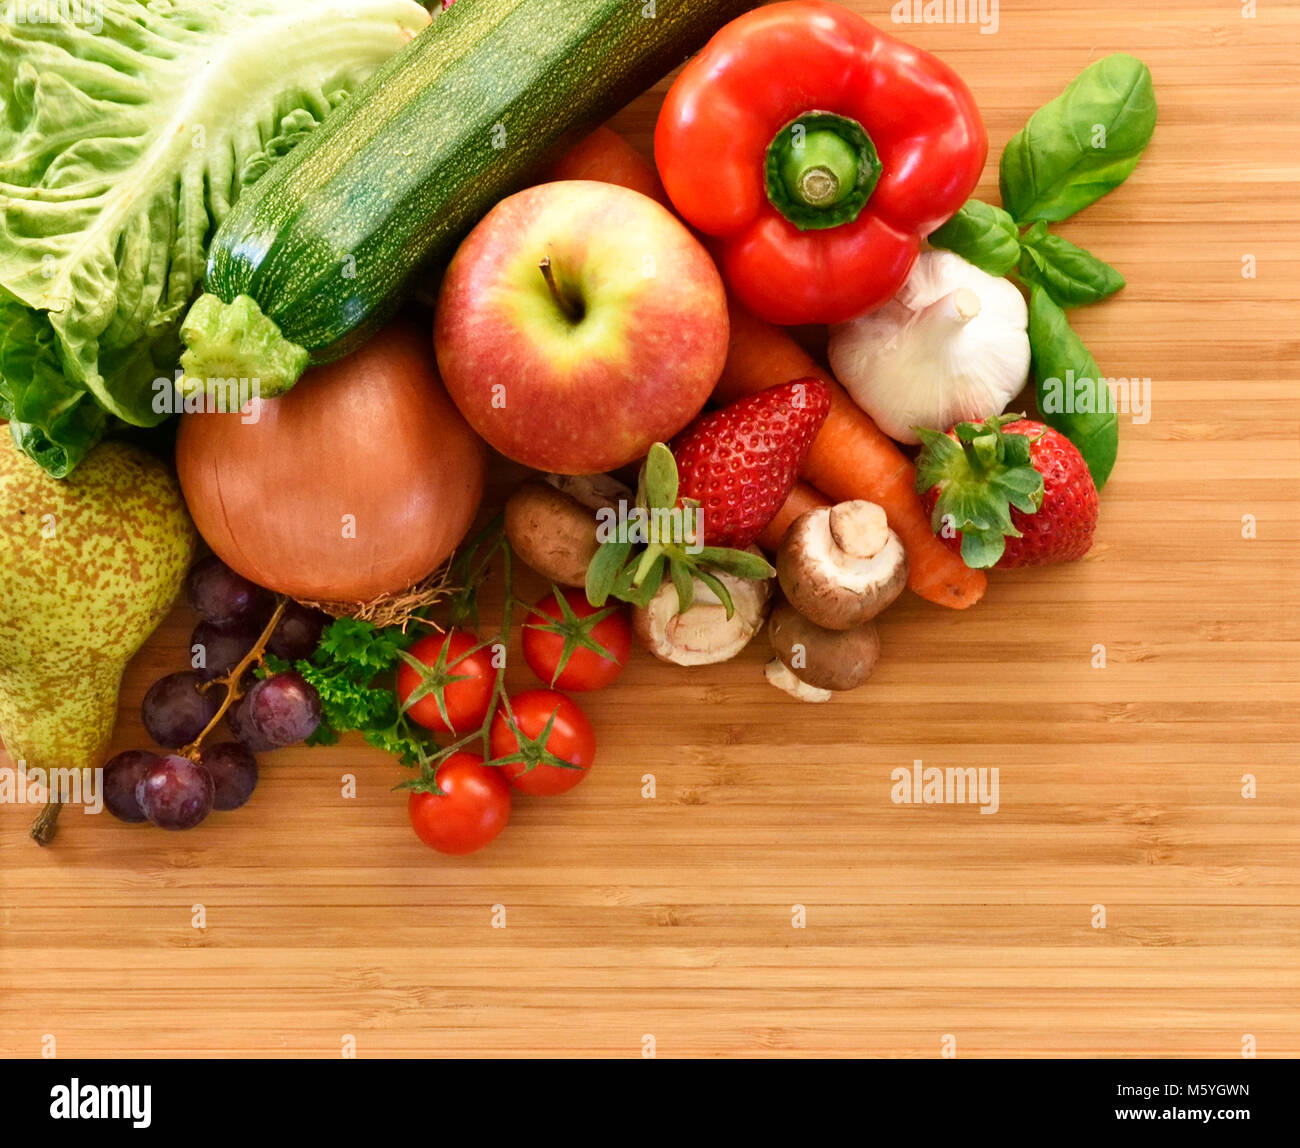 La verdura e la frutta composizione o la disposizione su un bambù tagliere. I prodotti freschi, il peperone rosso, Apple, carote, cipolle, aglio, fragola Foto Stock